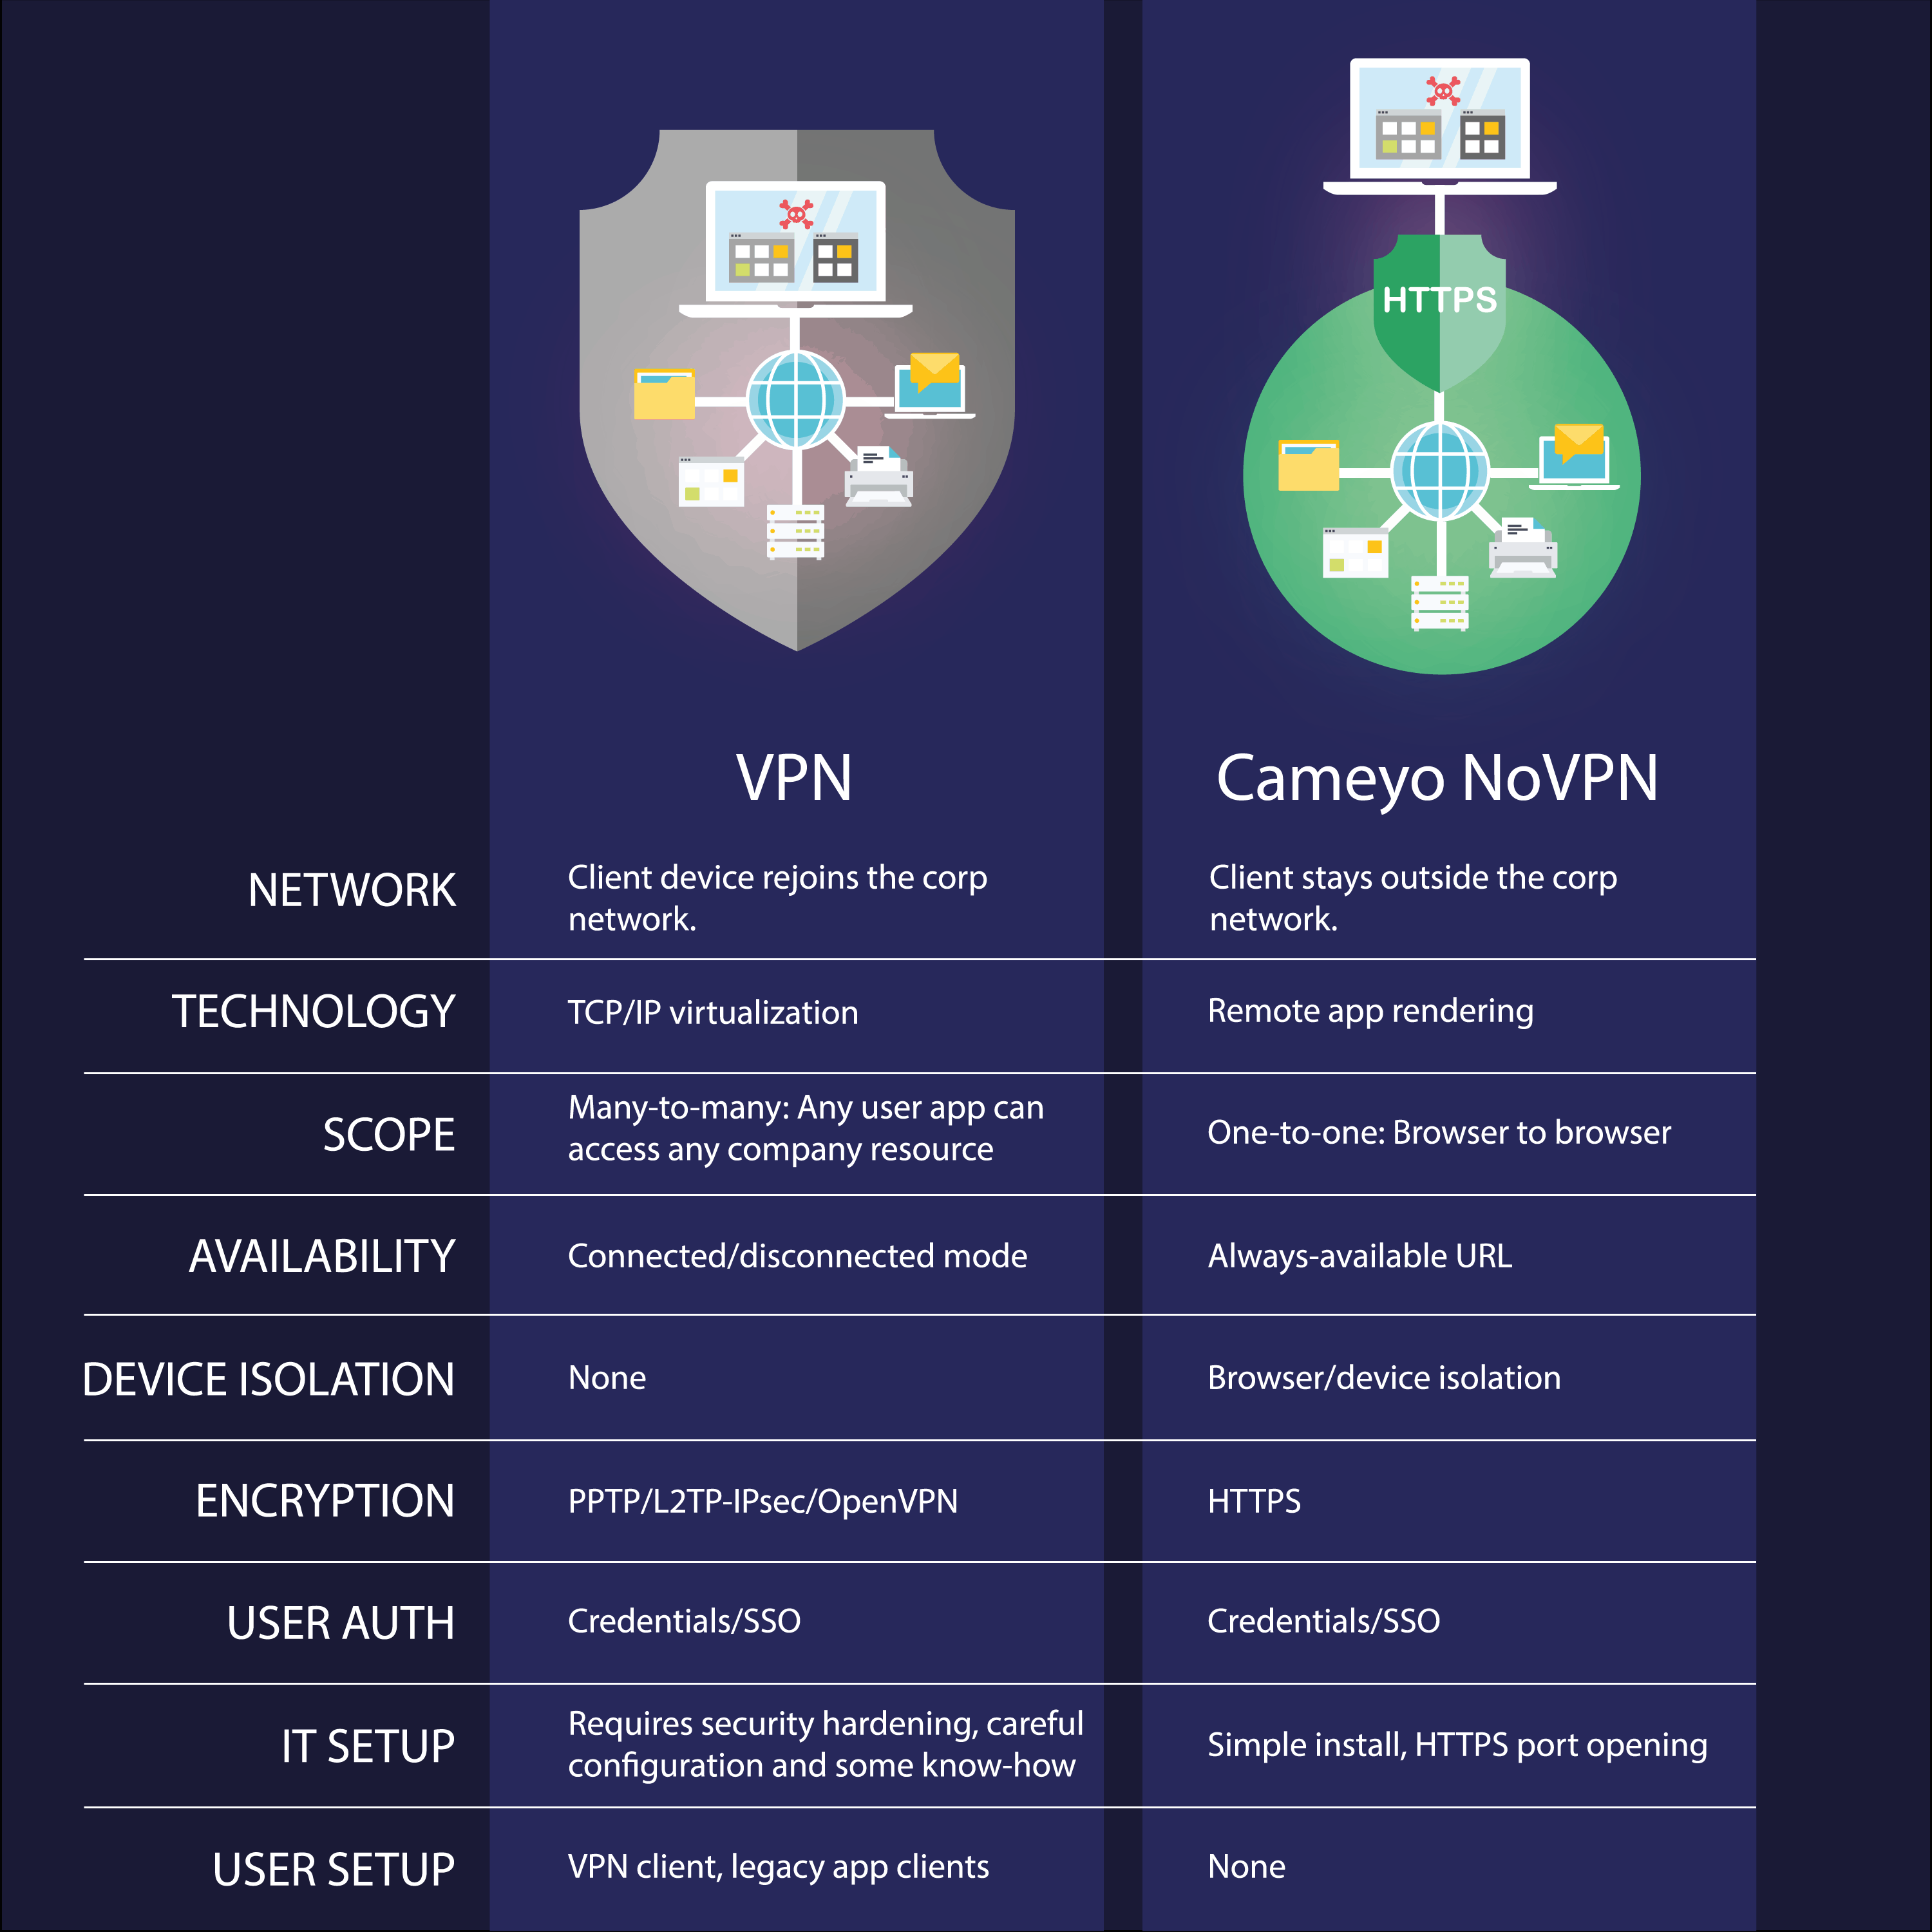 Cameyo NoVPN vs. VPN